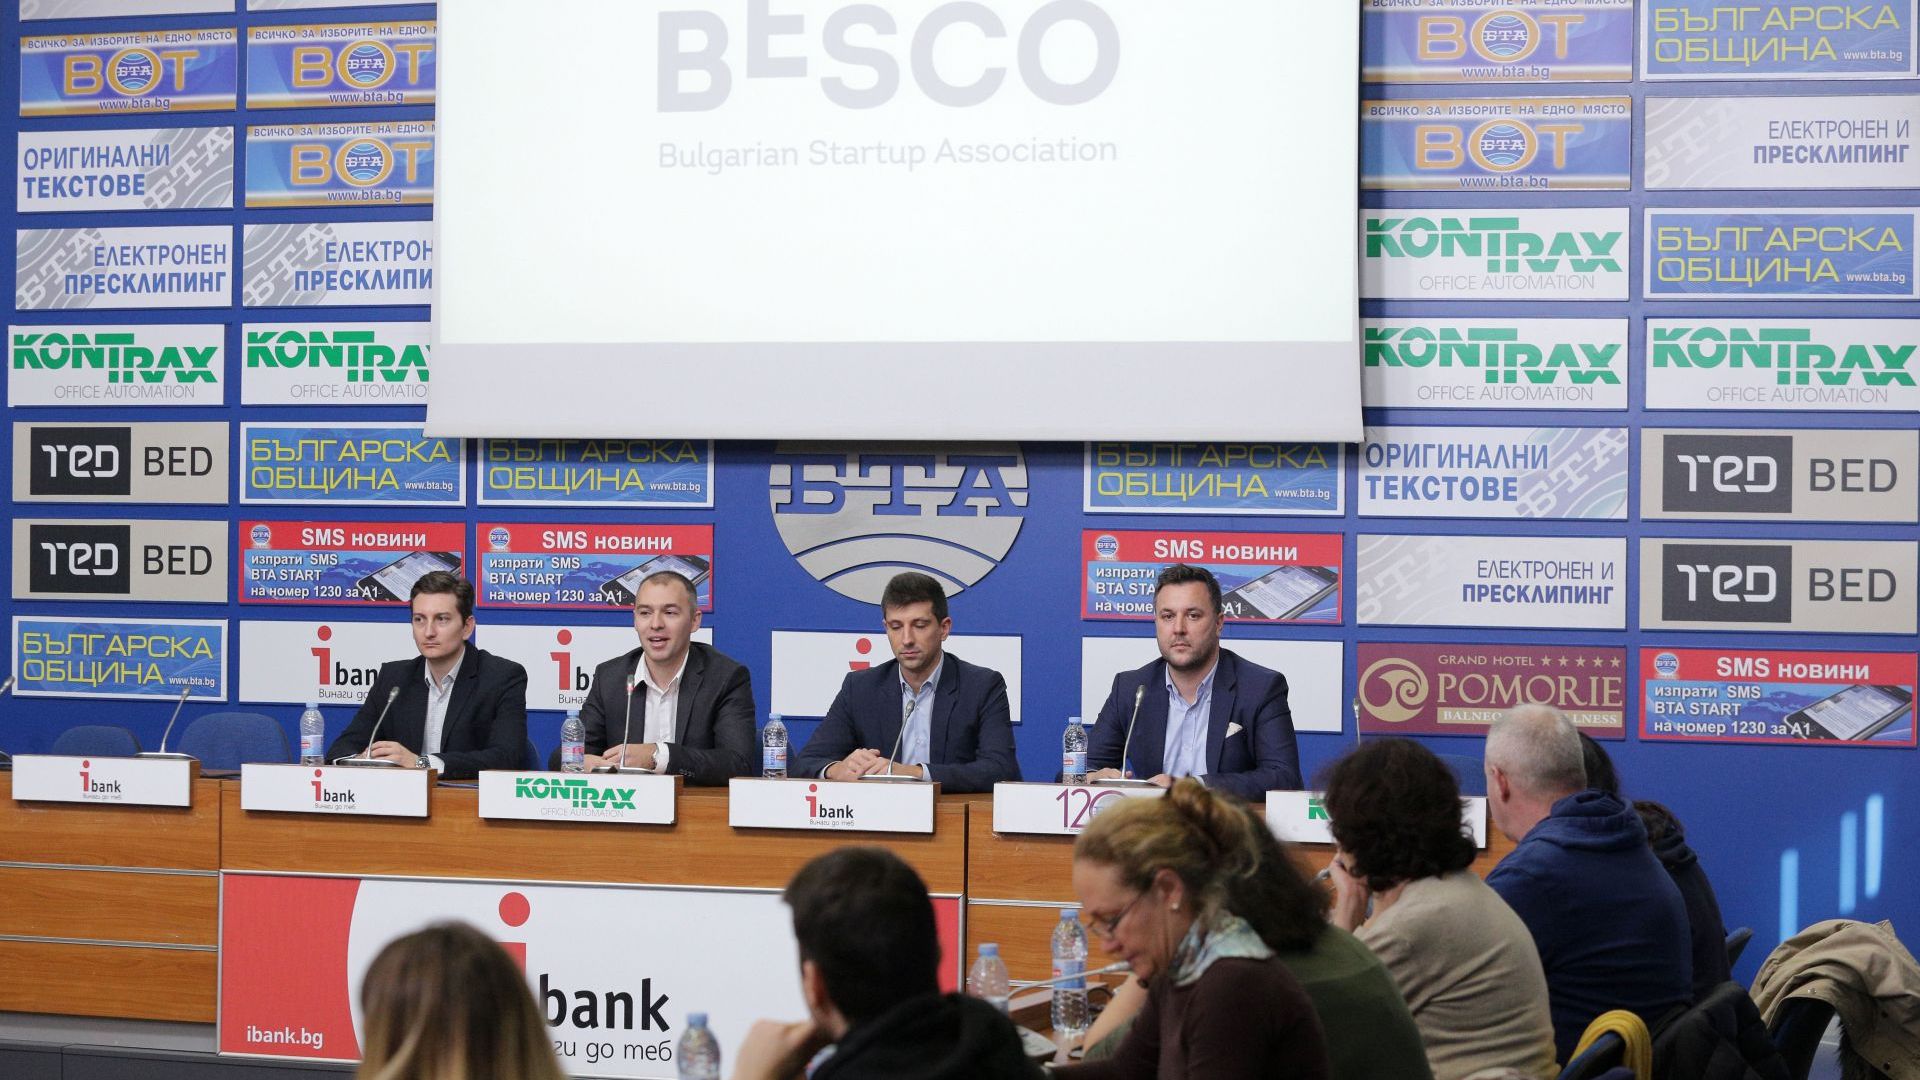 Ръководството на BESCO Българската стартъп асоциация призова вносителите на законопроекта